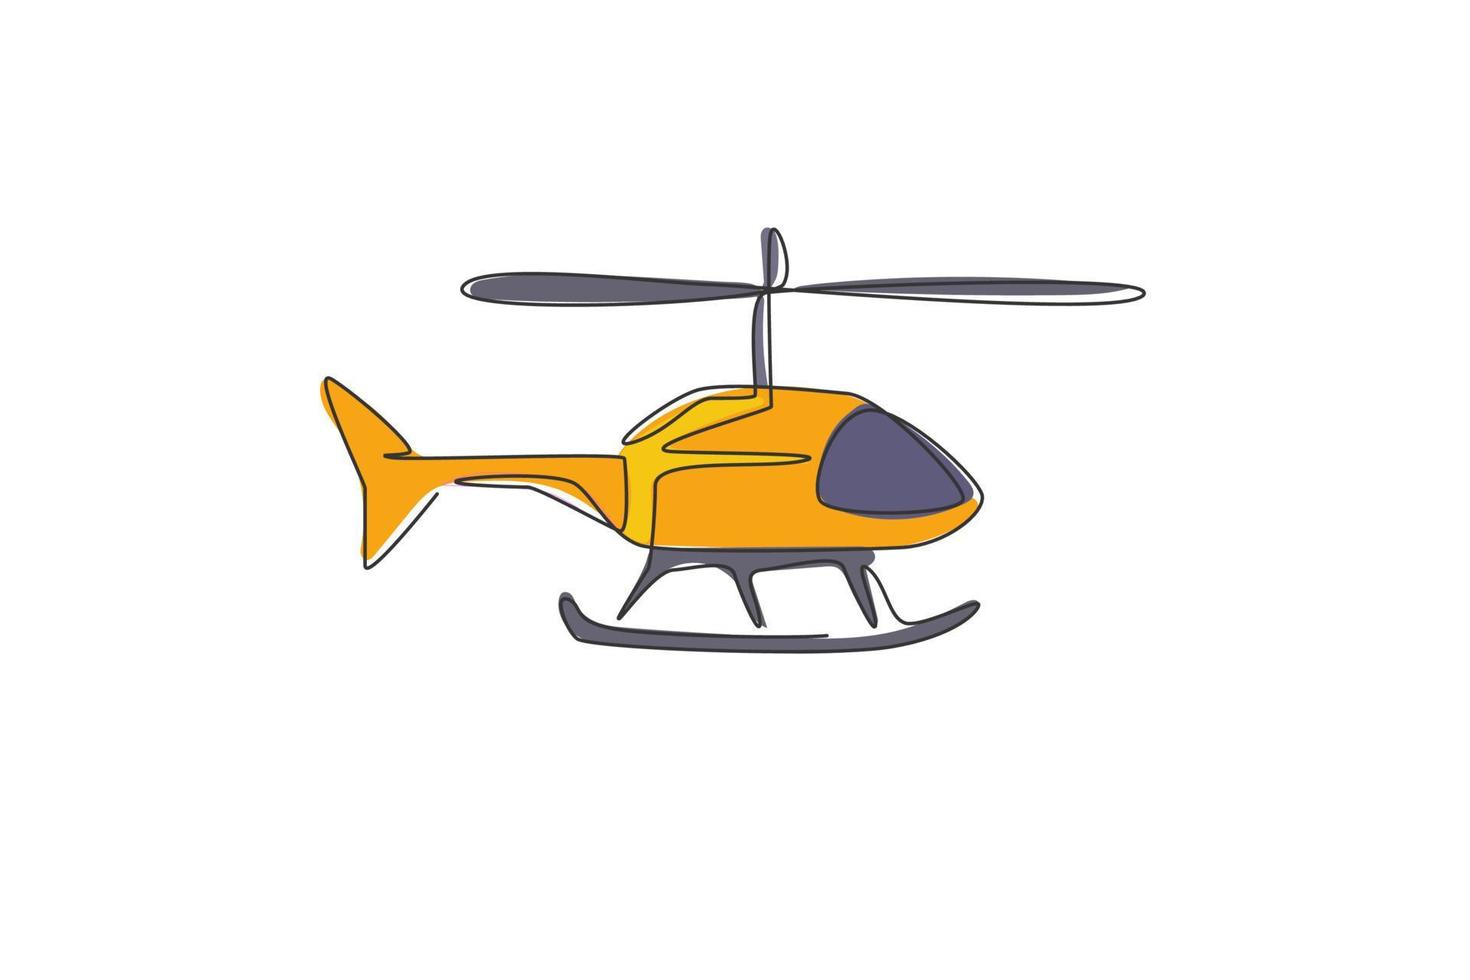 disegno a linea continua di un elicottero volante. concetto di veicolo di trasporto aereo. grafico dell'illustrazione di vettore di disegno di disegno di una linea alla moda